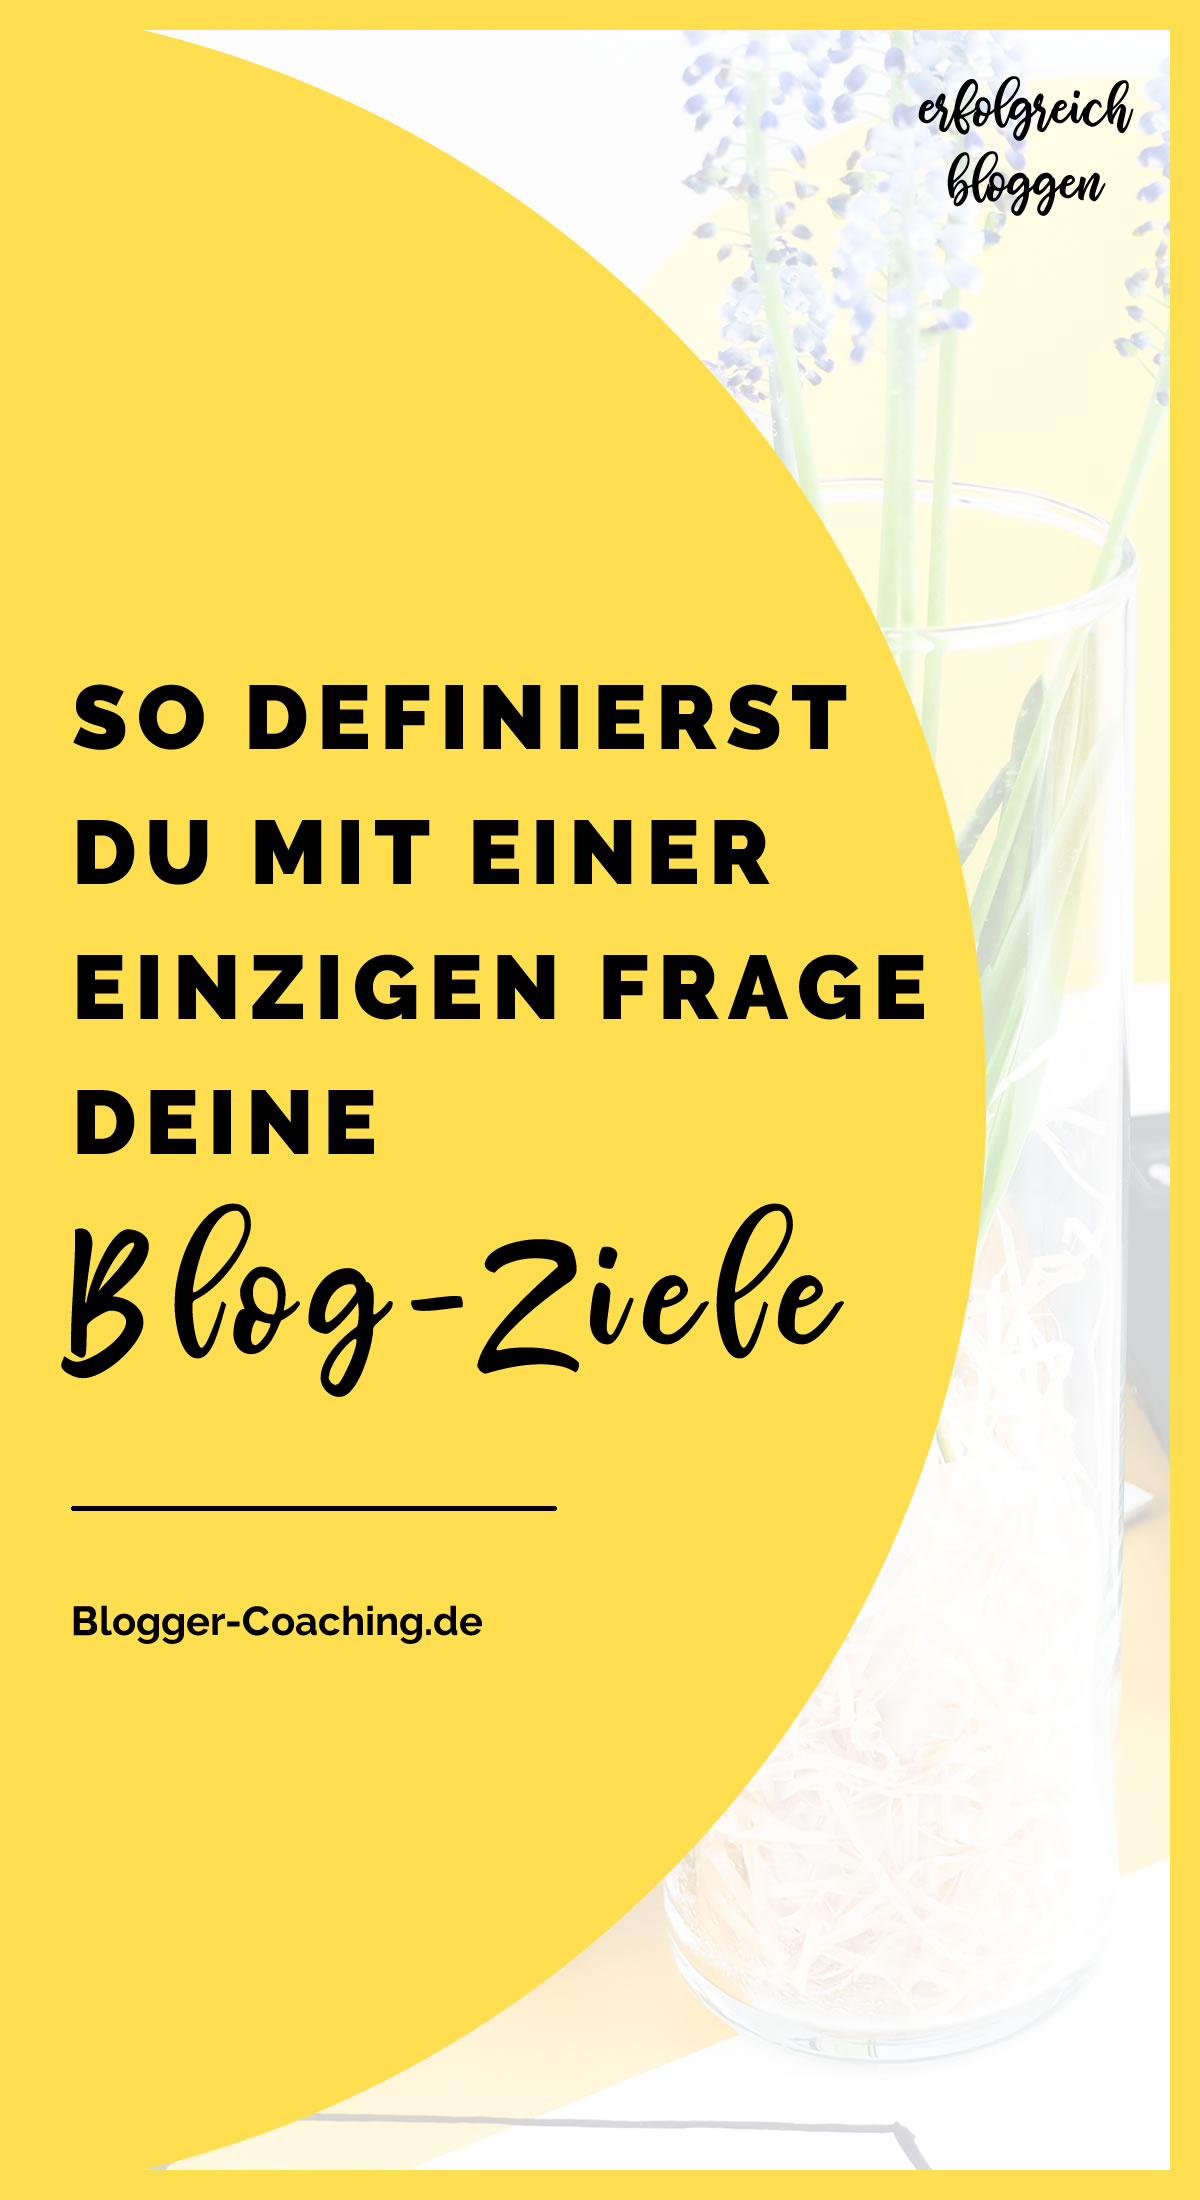 Warum? - Die wichtigste Frage für deinen Blog-Erfolg | Blogger-Coaching.de - Dein Weg zum Blog-Erfolg #blogger #erfolg